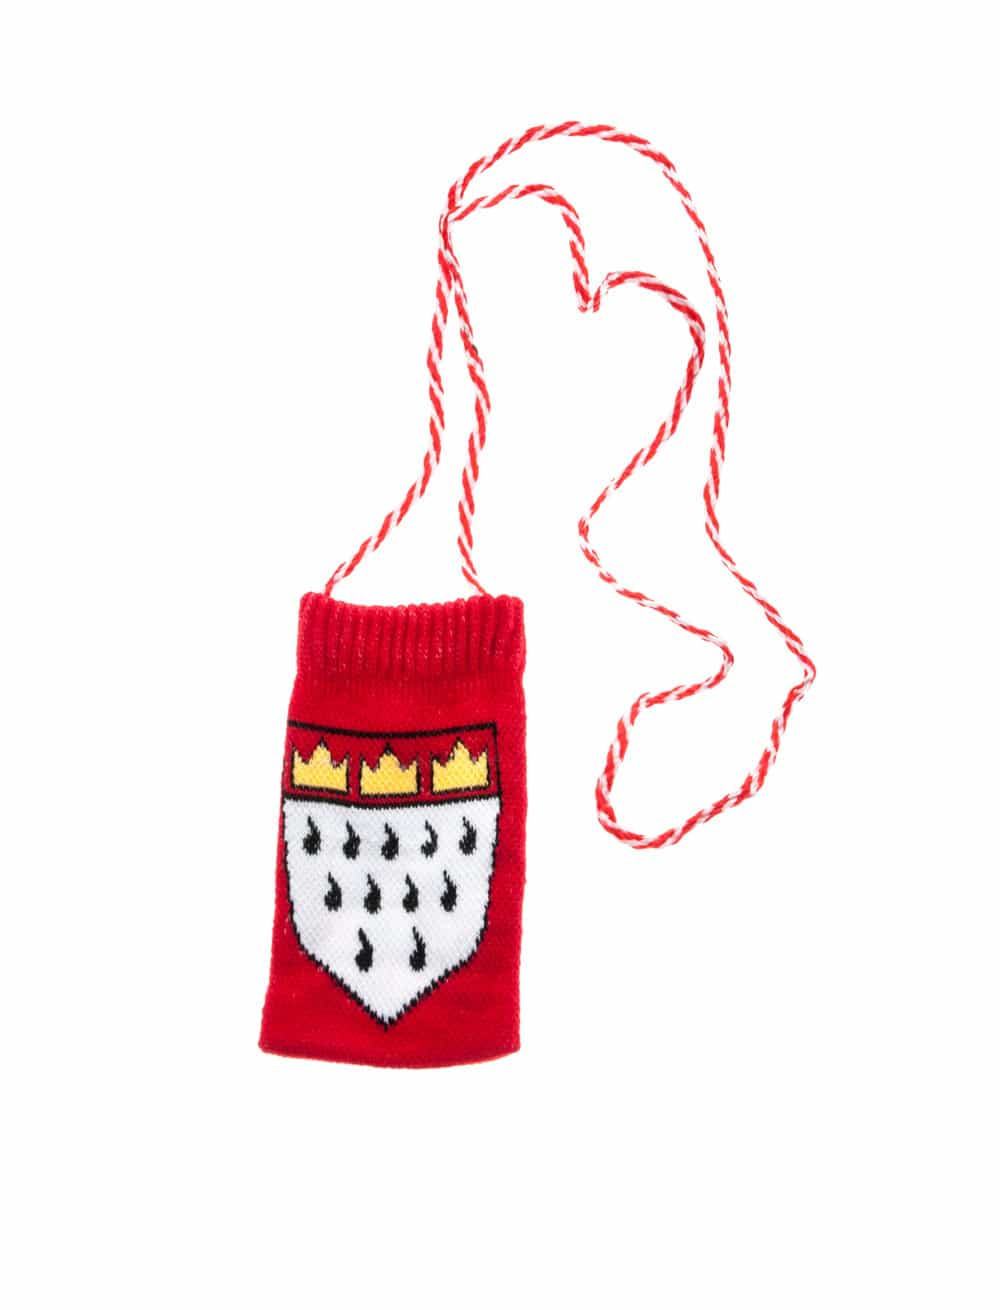 Kölschglashalter Socke mit Köln Wappen